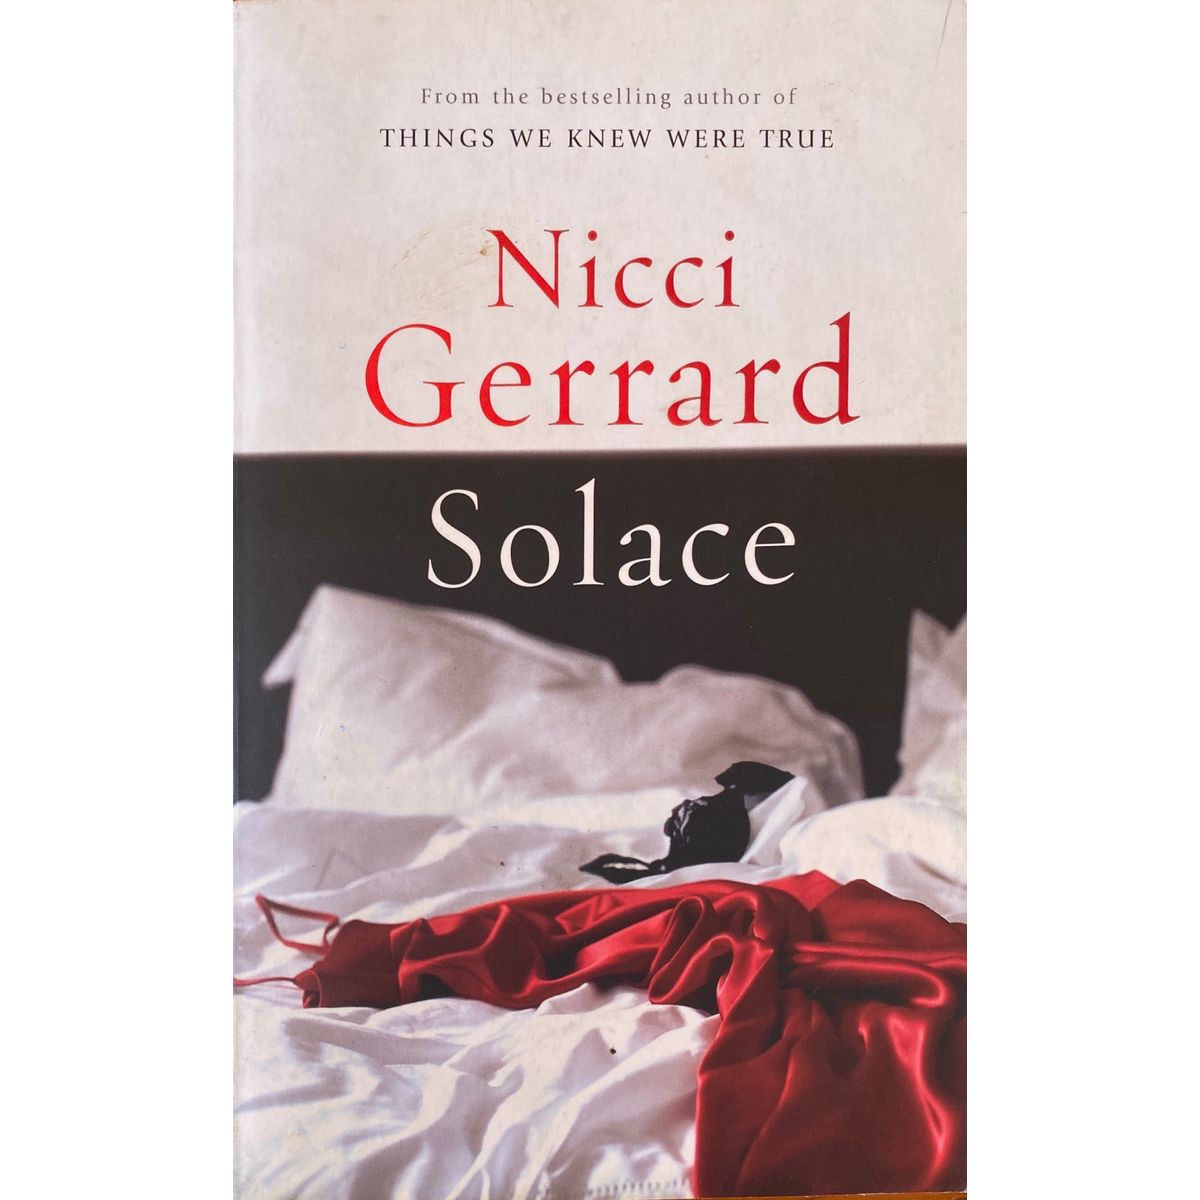 ISBN: 9780141017532 / 0141017538 - Solace by Nicci Gerrard [2005]